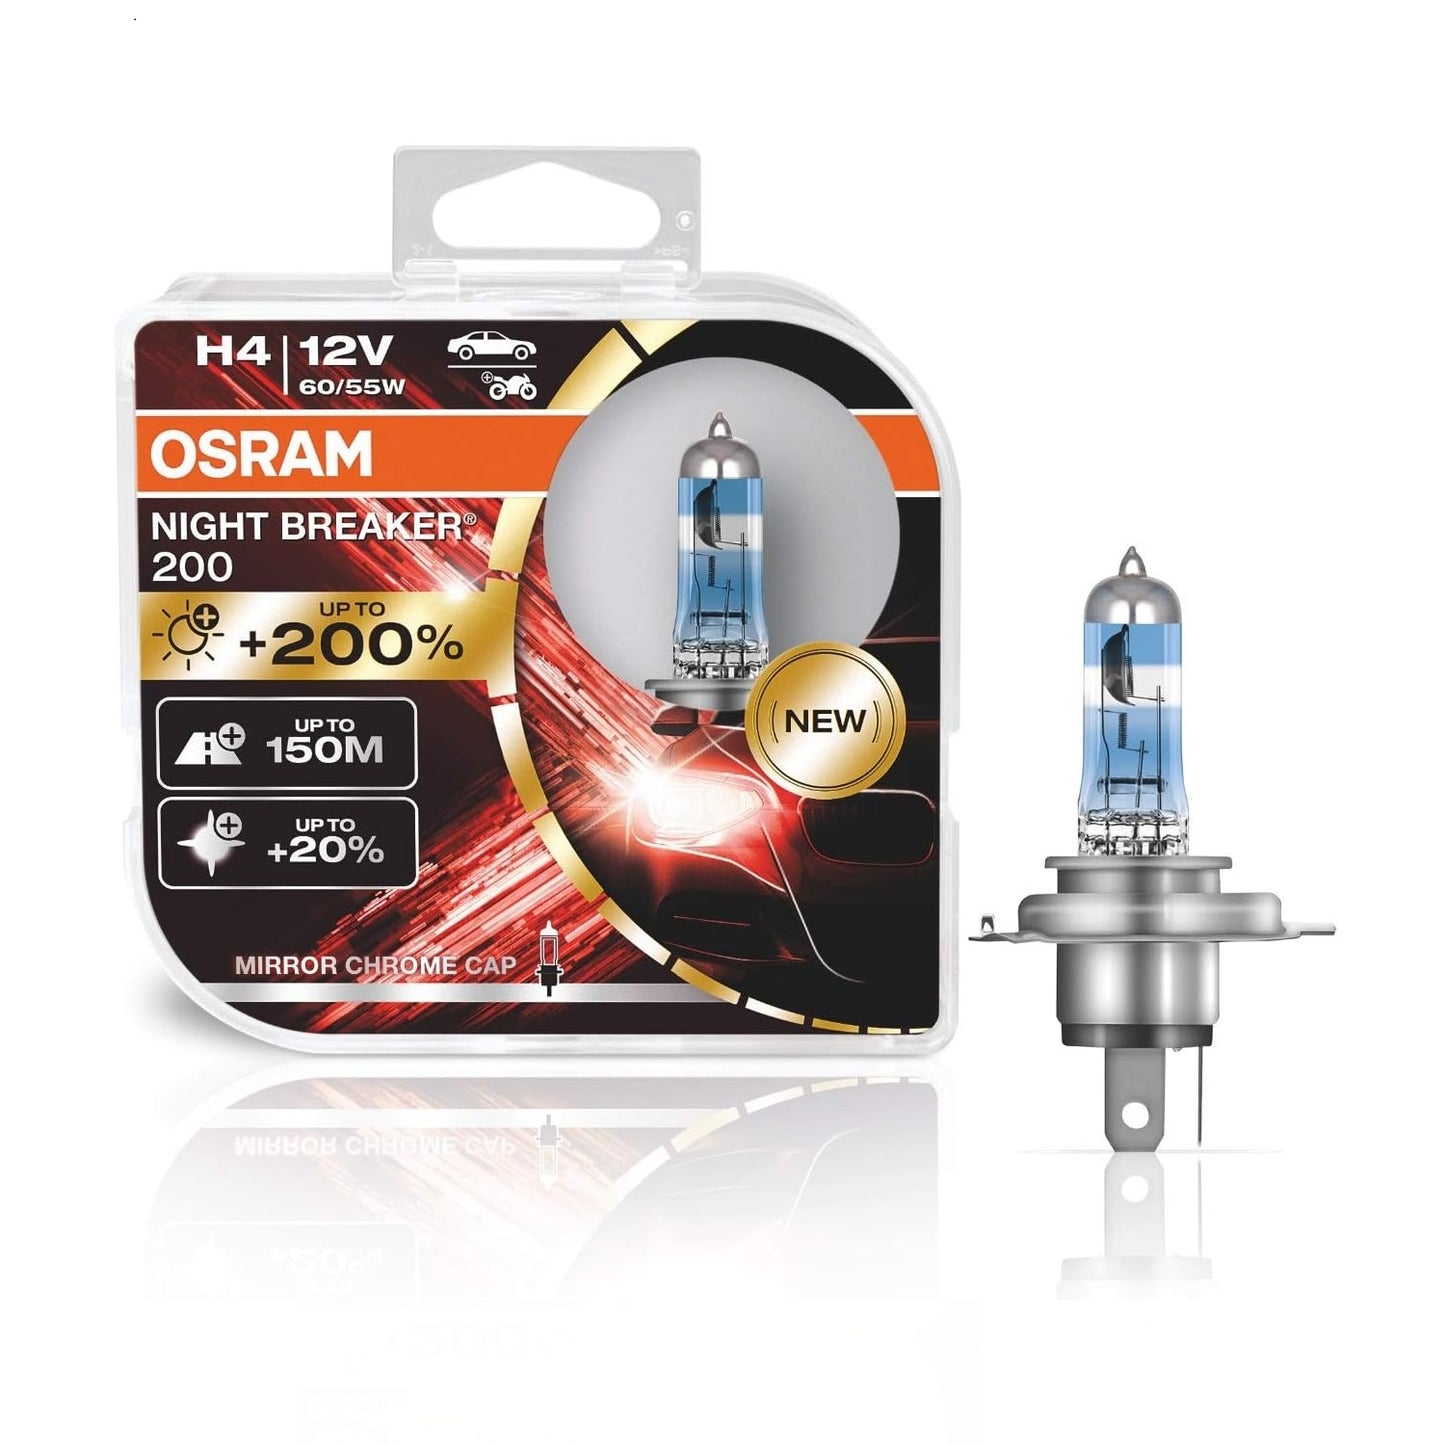 OSRAM NIGHT BREAKER 200 Halogen Bulbs/Lamps (60/55W)